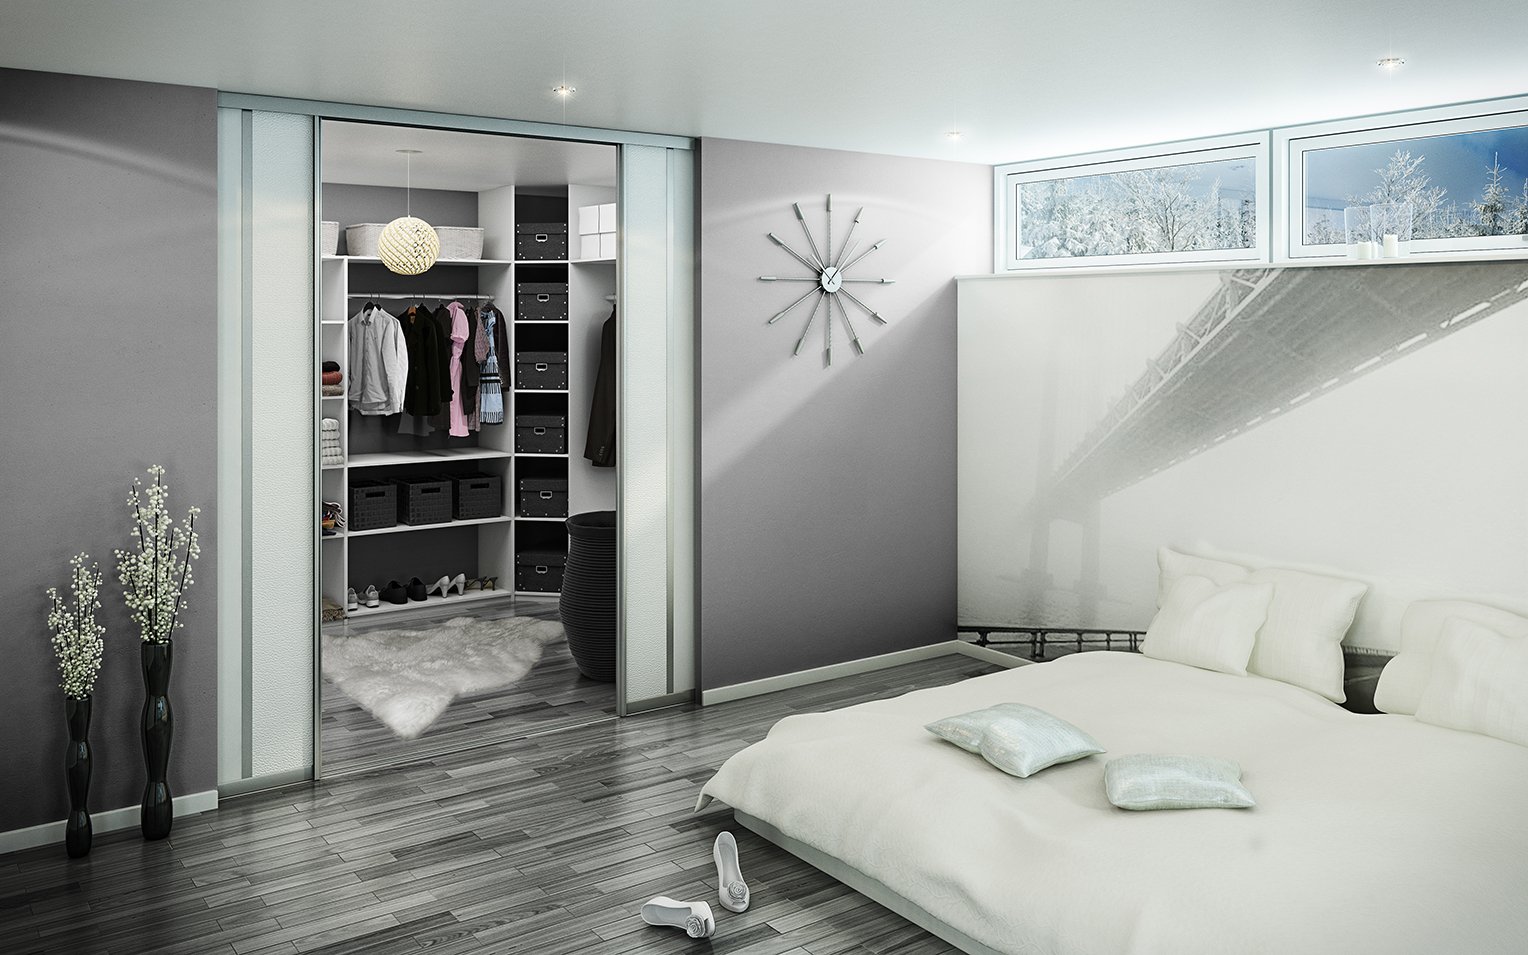 Гардеробная в спальне: выбор места и размеров. обустройство гардеробной в небольшой спальне. варианты перегородок и ширм. выбор света и полок для гардеробной (фото + видео)